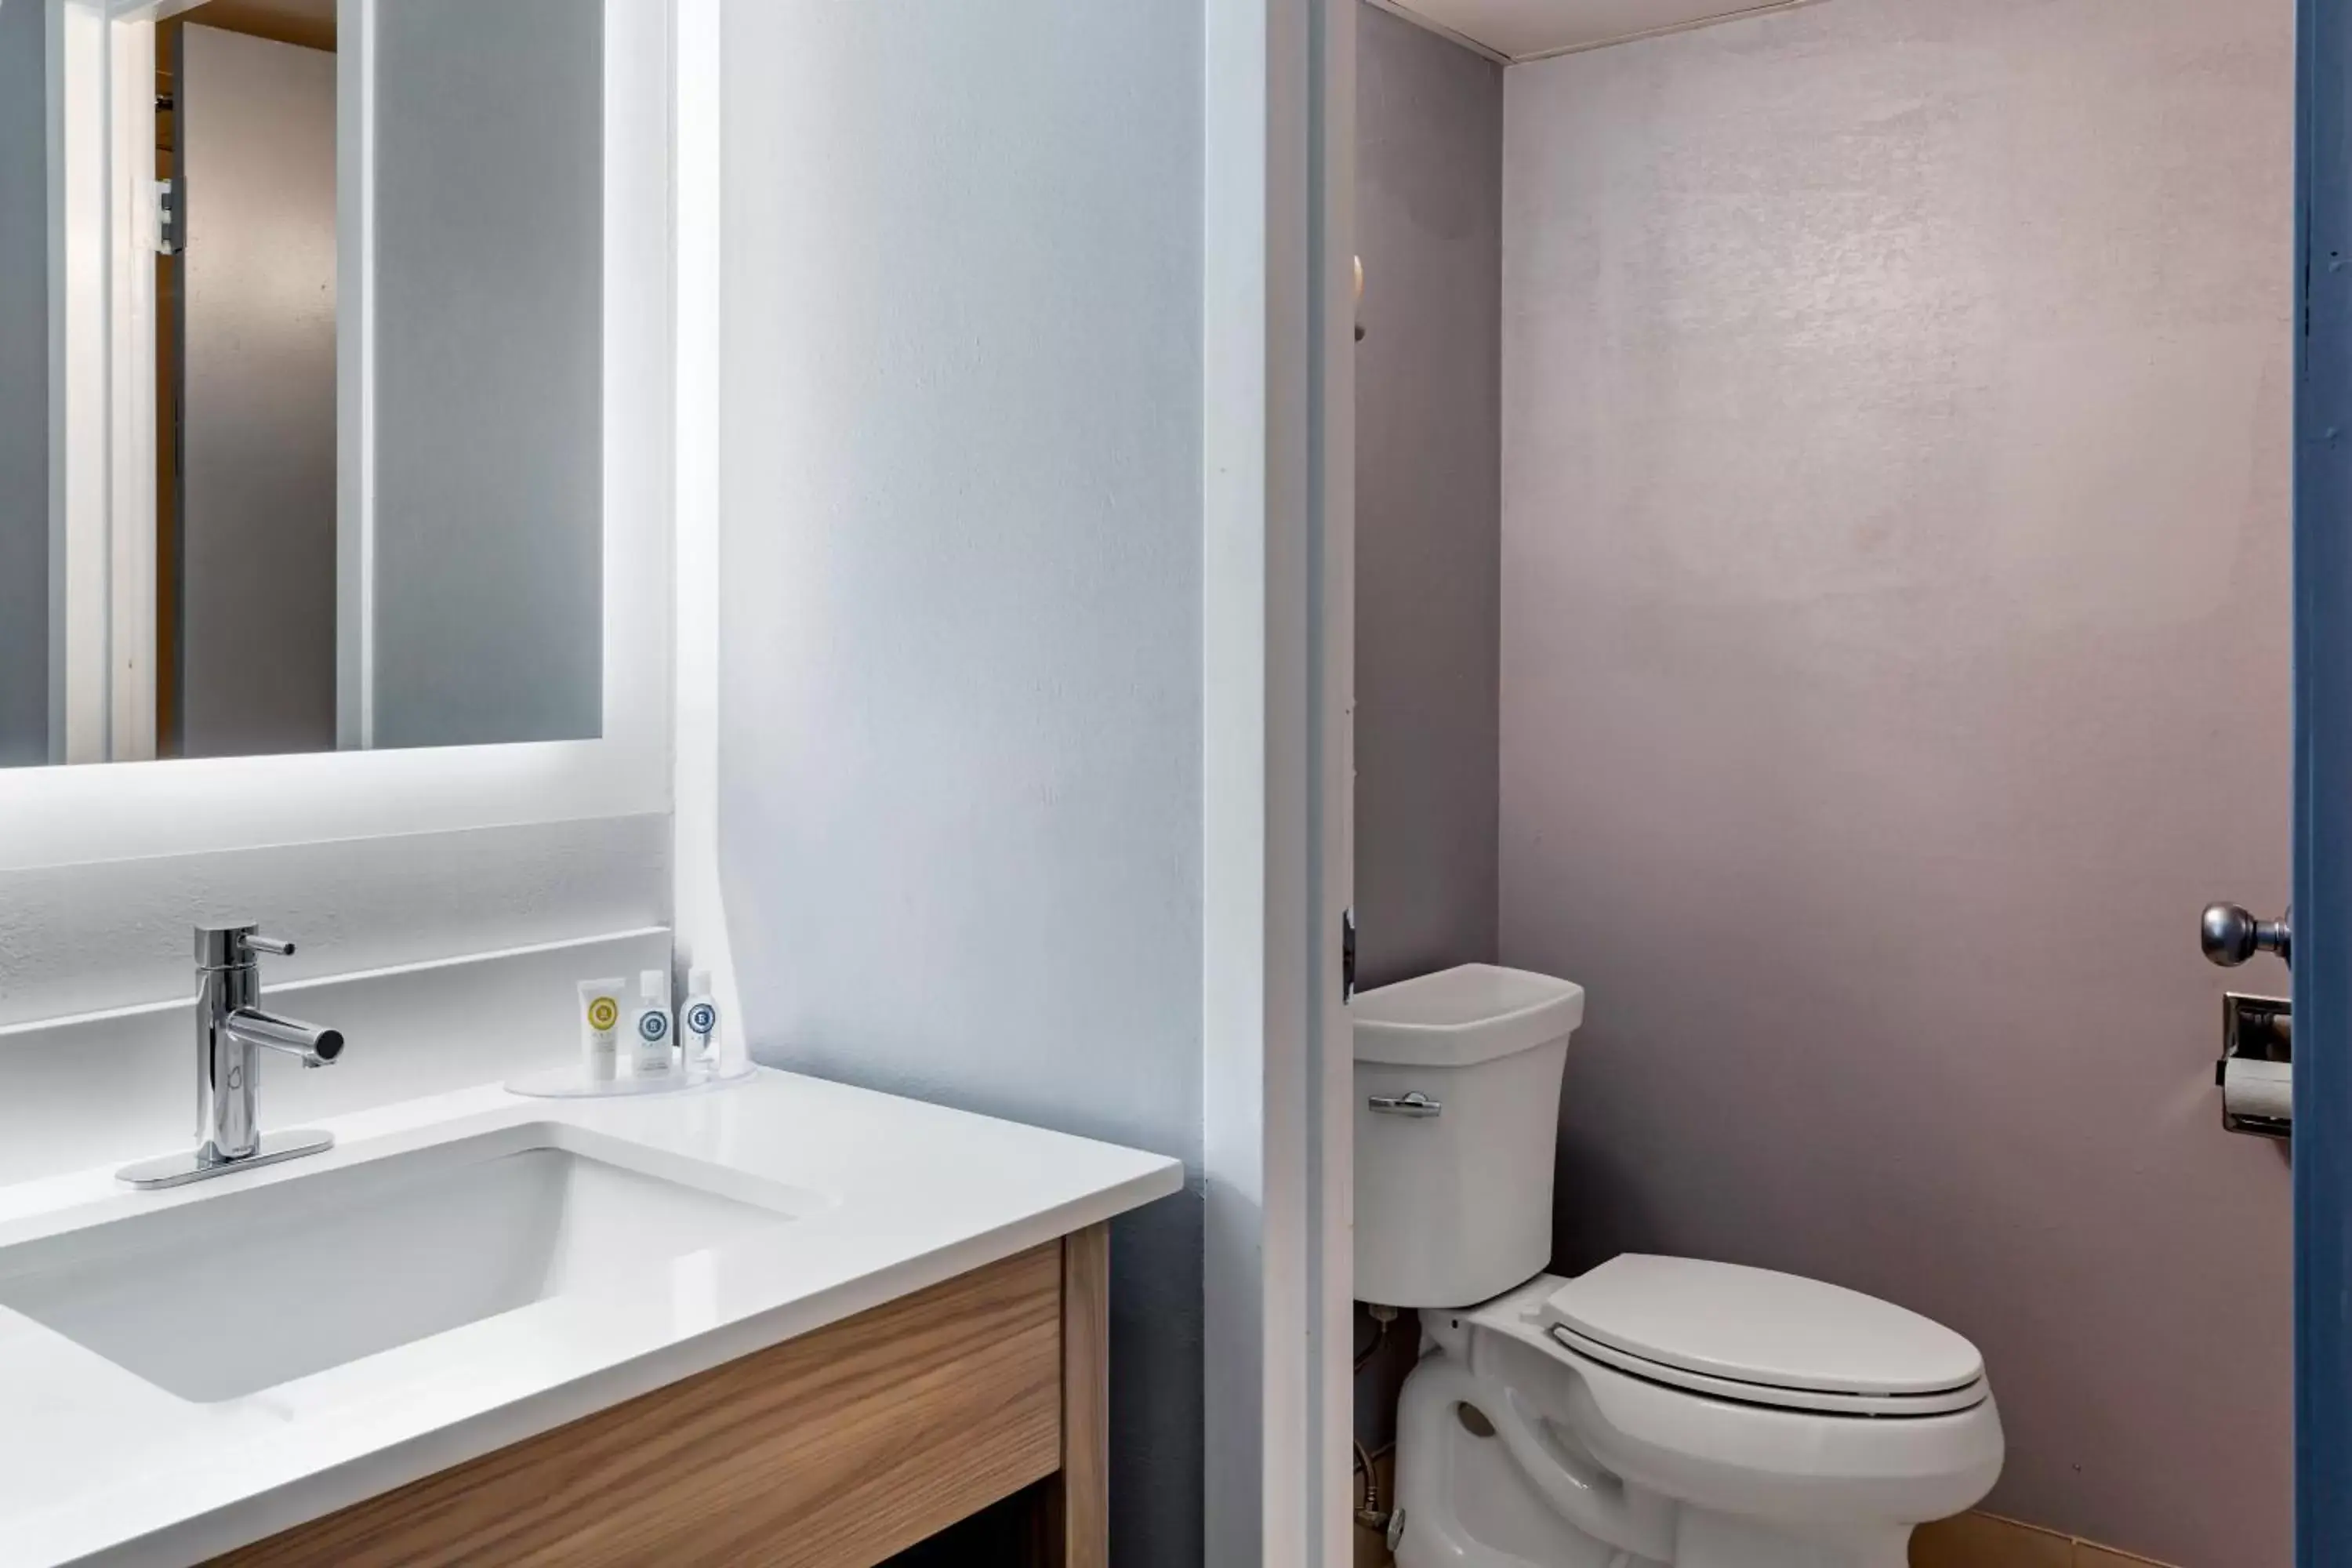 Toilet, Bathroom in Comfort Inn Hyannis - Cape Cod